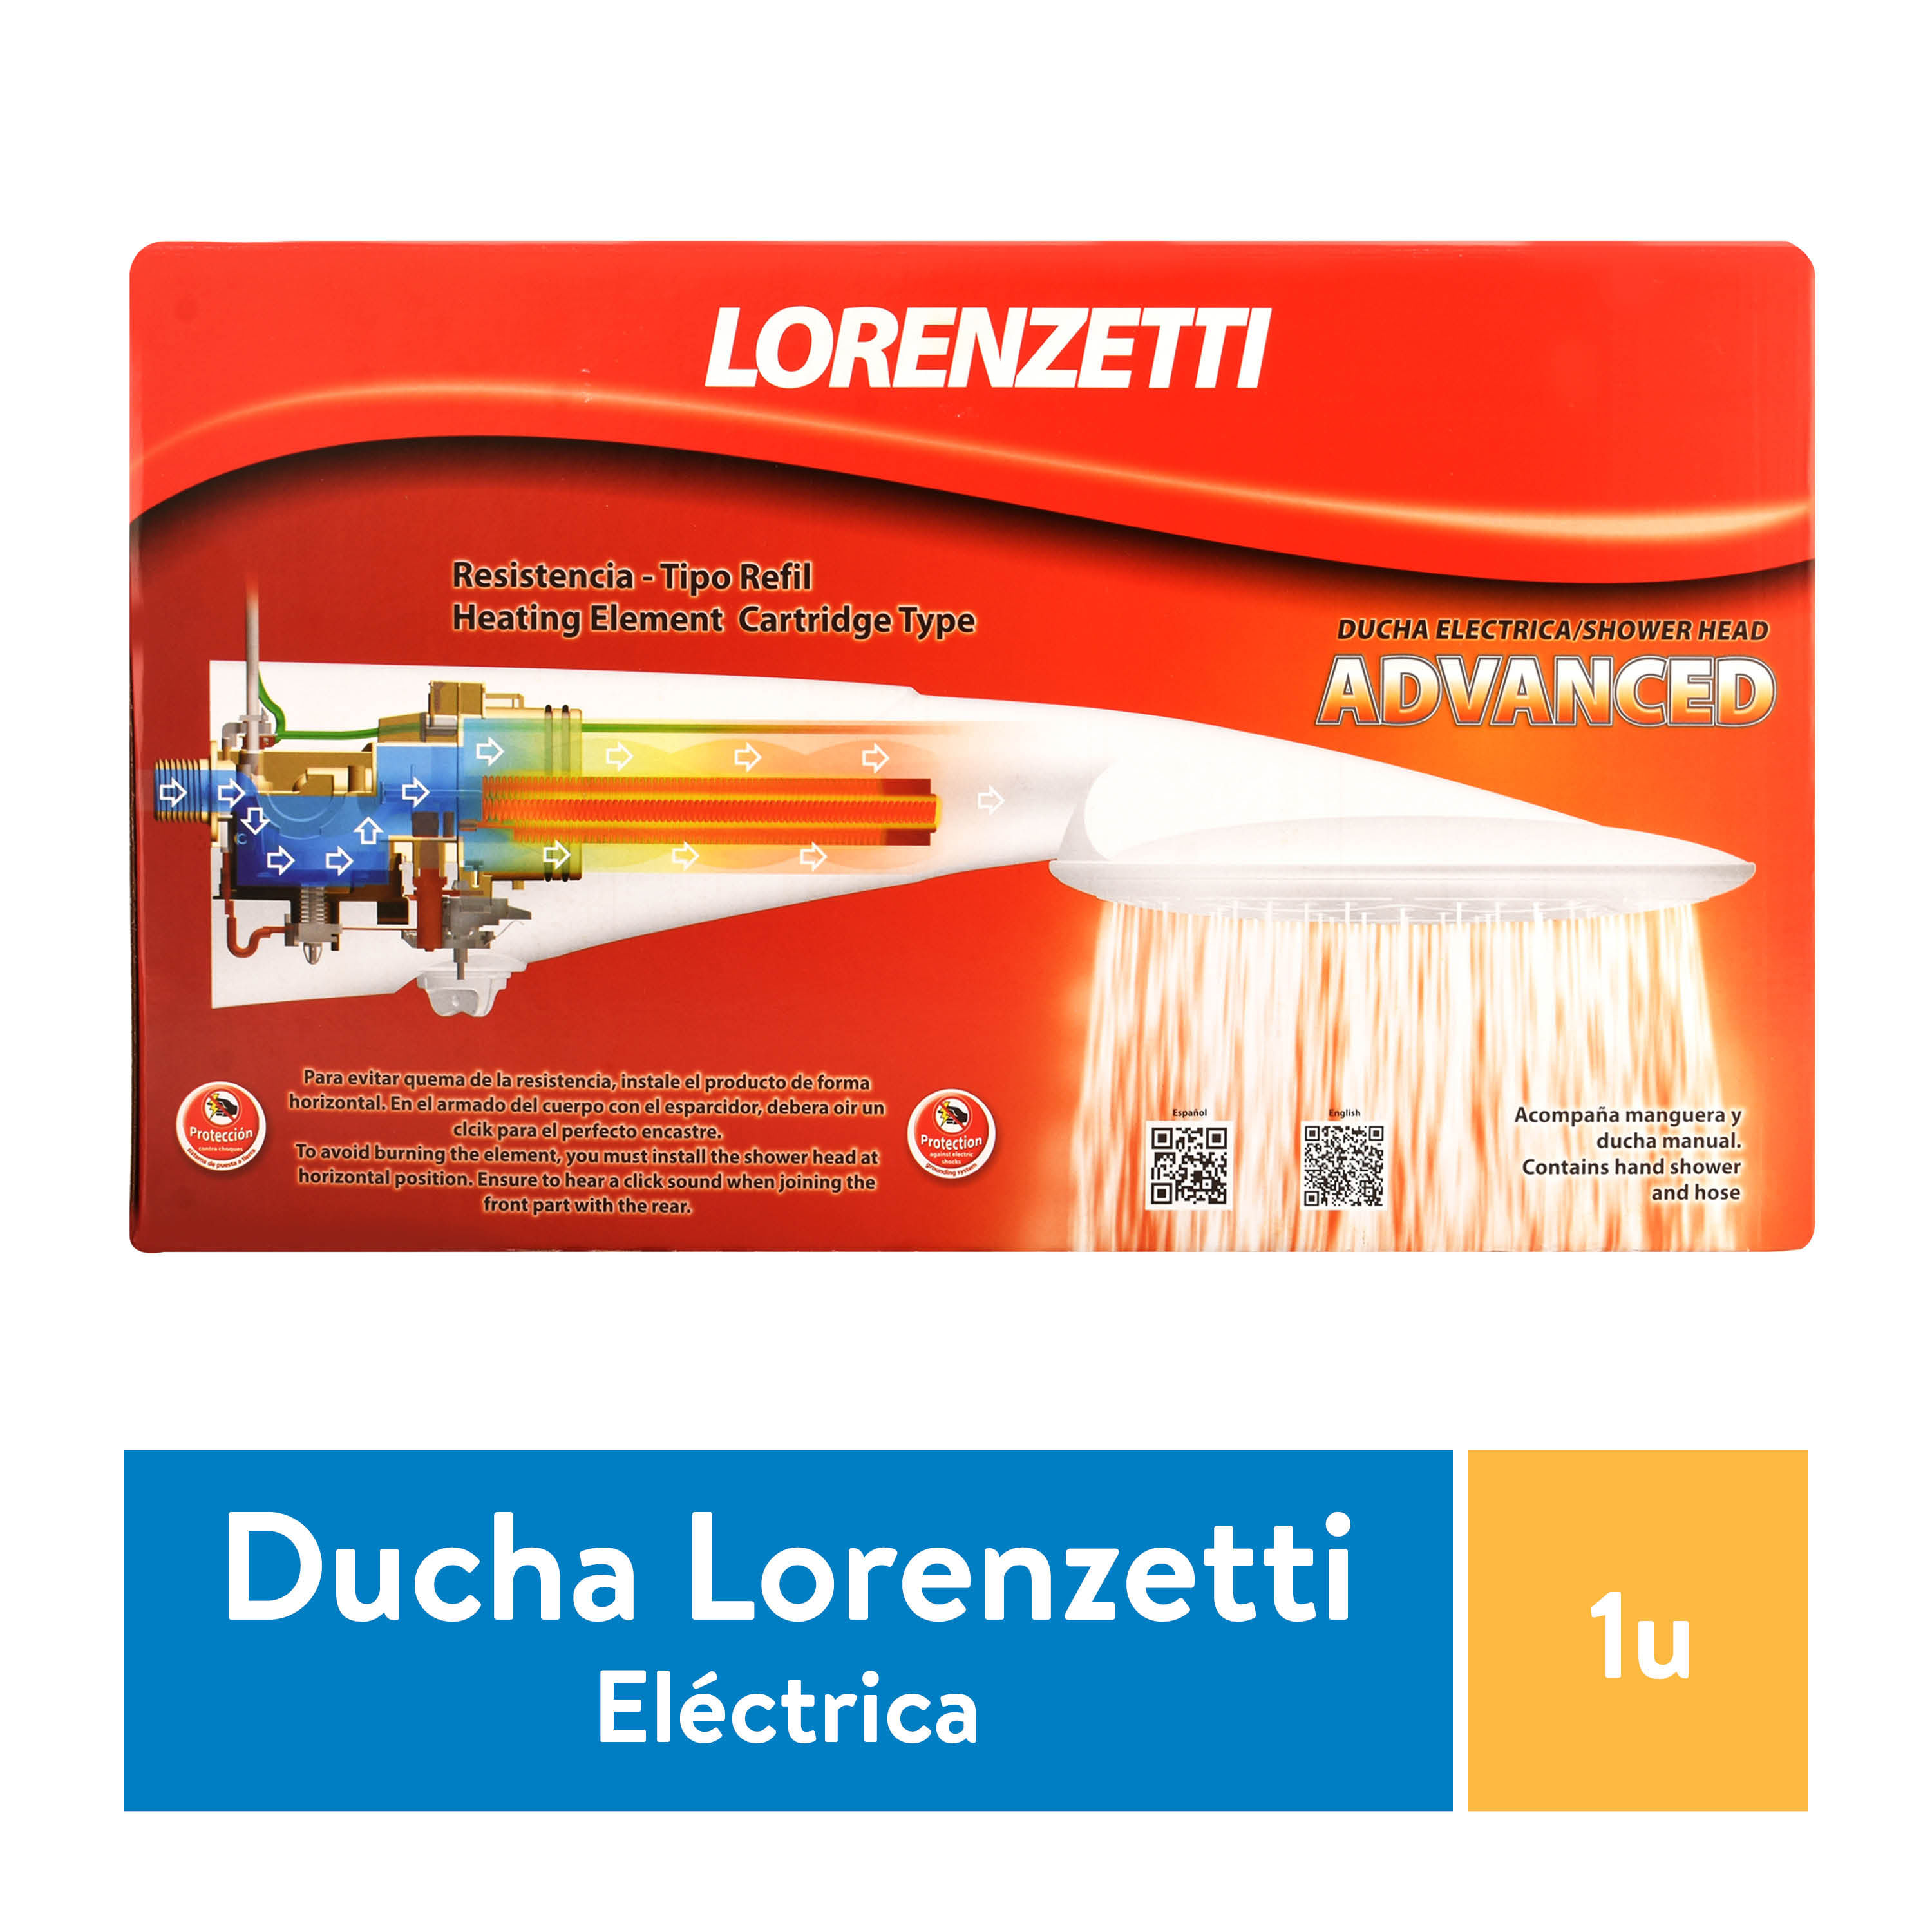 Ducha-Lorenzetti-Avanzado-Multitemperatura-de-127v-5500w-modelo-7517057-unidad-1-42326